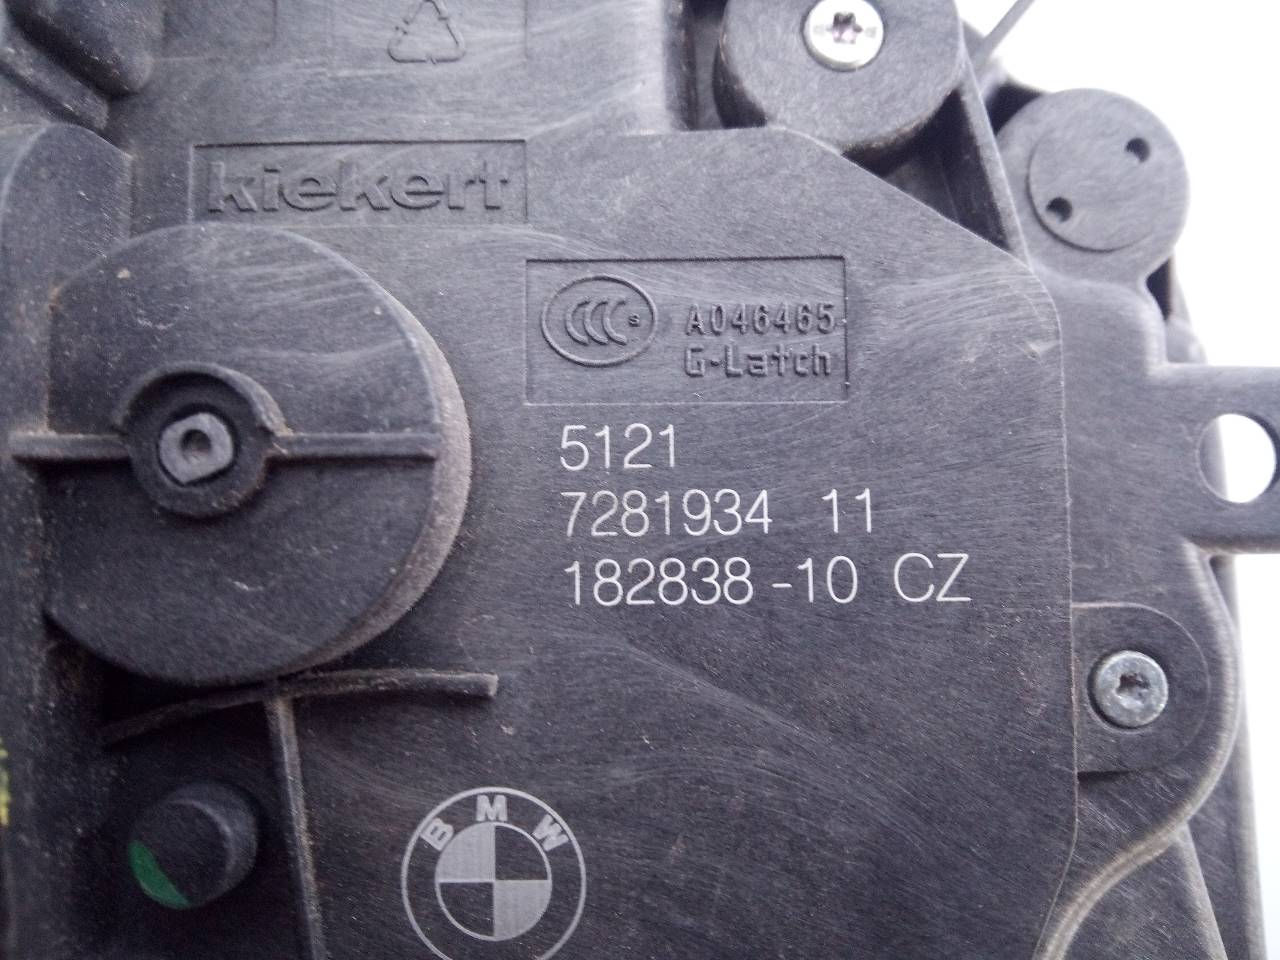 MINI Cooper R56 (2006-2015) Priekinių dešinių durų spyna 728193411, 18283810CZ, E1-B4-47-2 21817201